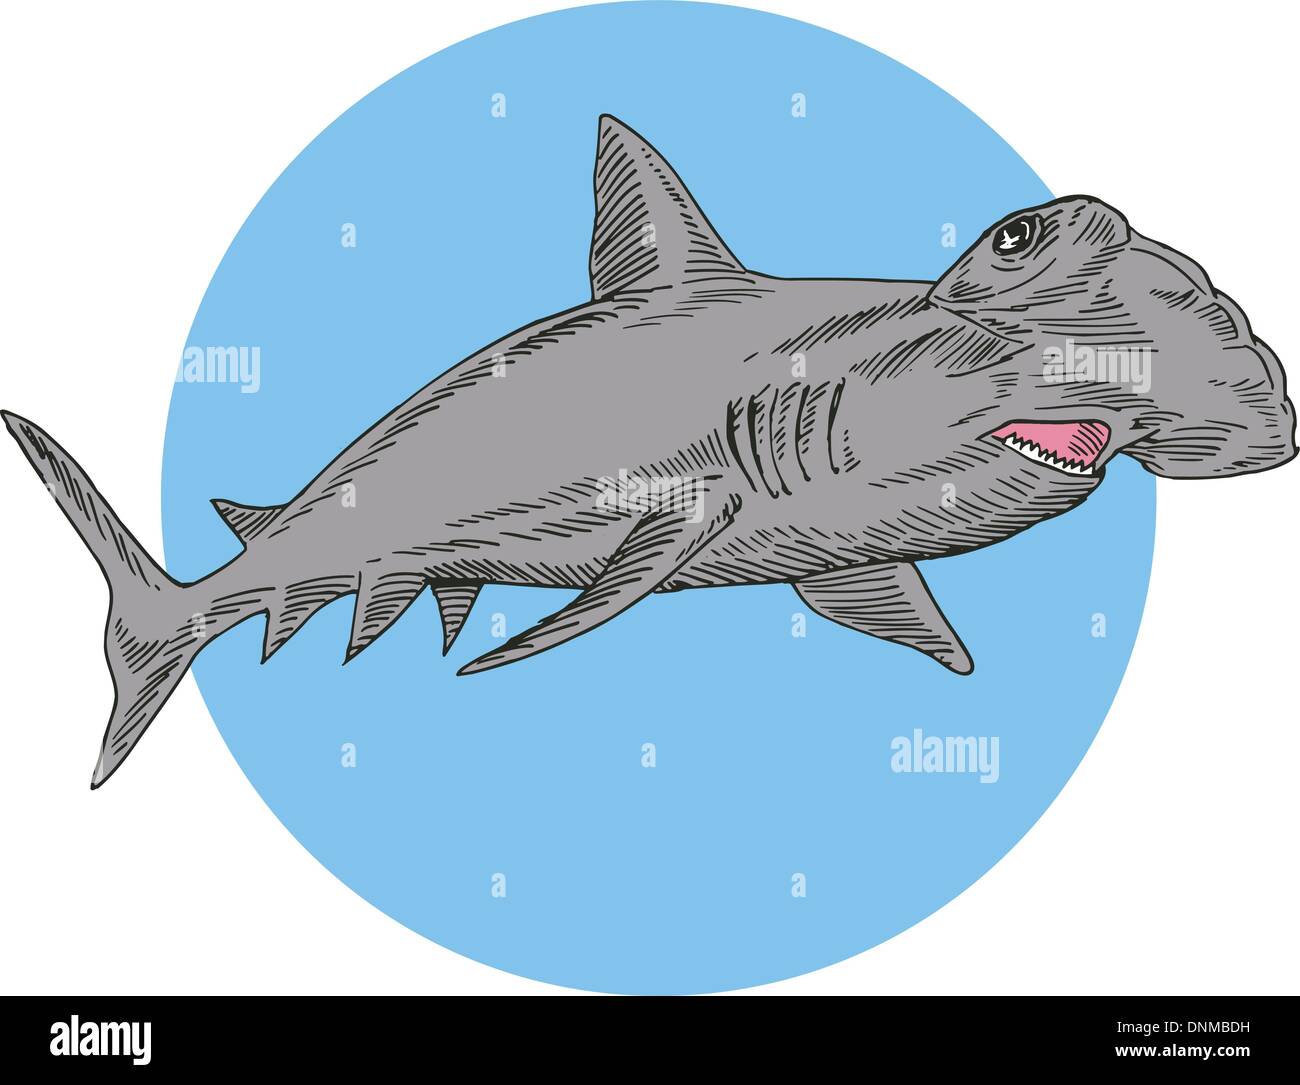 Illustrazione di squalo martello nuoto fatto in stile retrò. Illustrazione Vettoriale